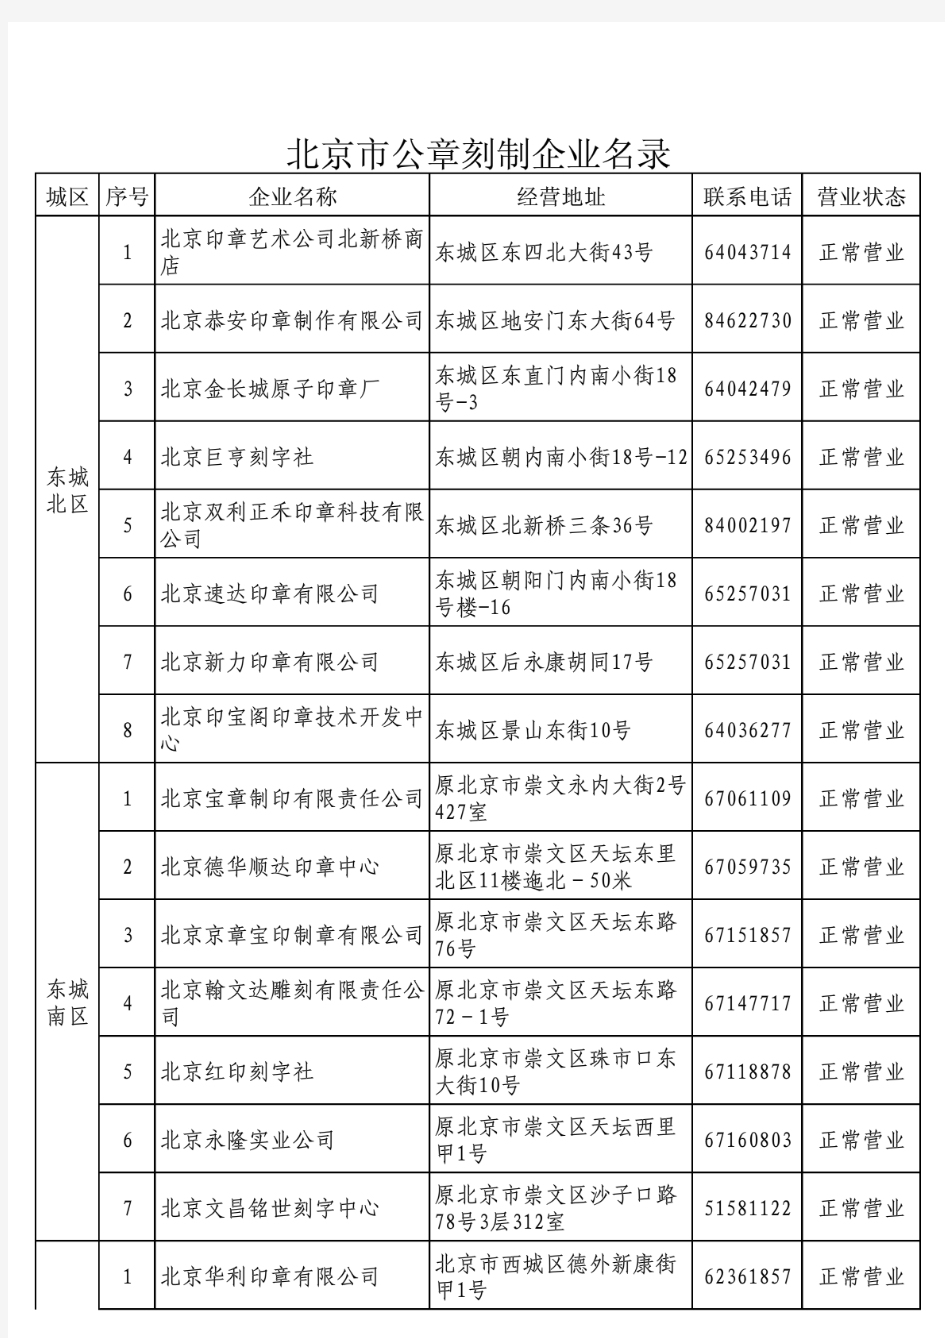 北京市公章刻制企业名录